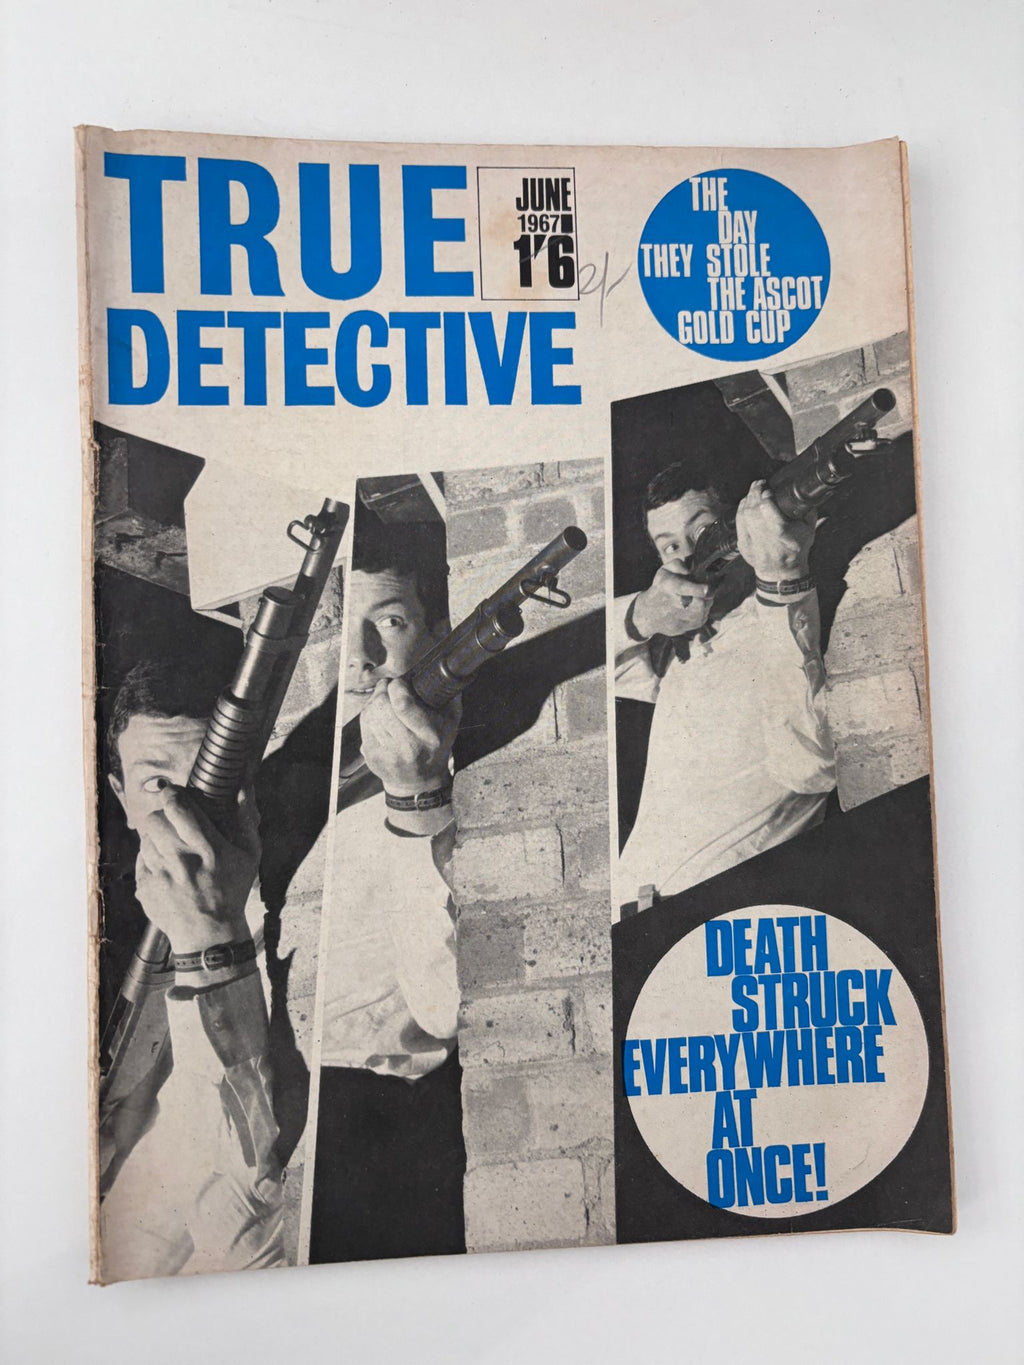 True Detective June 1967